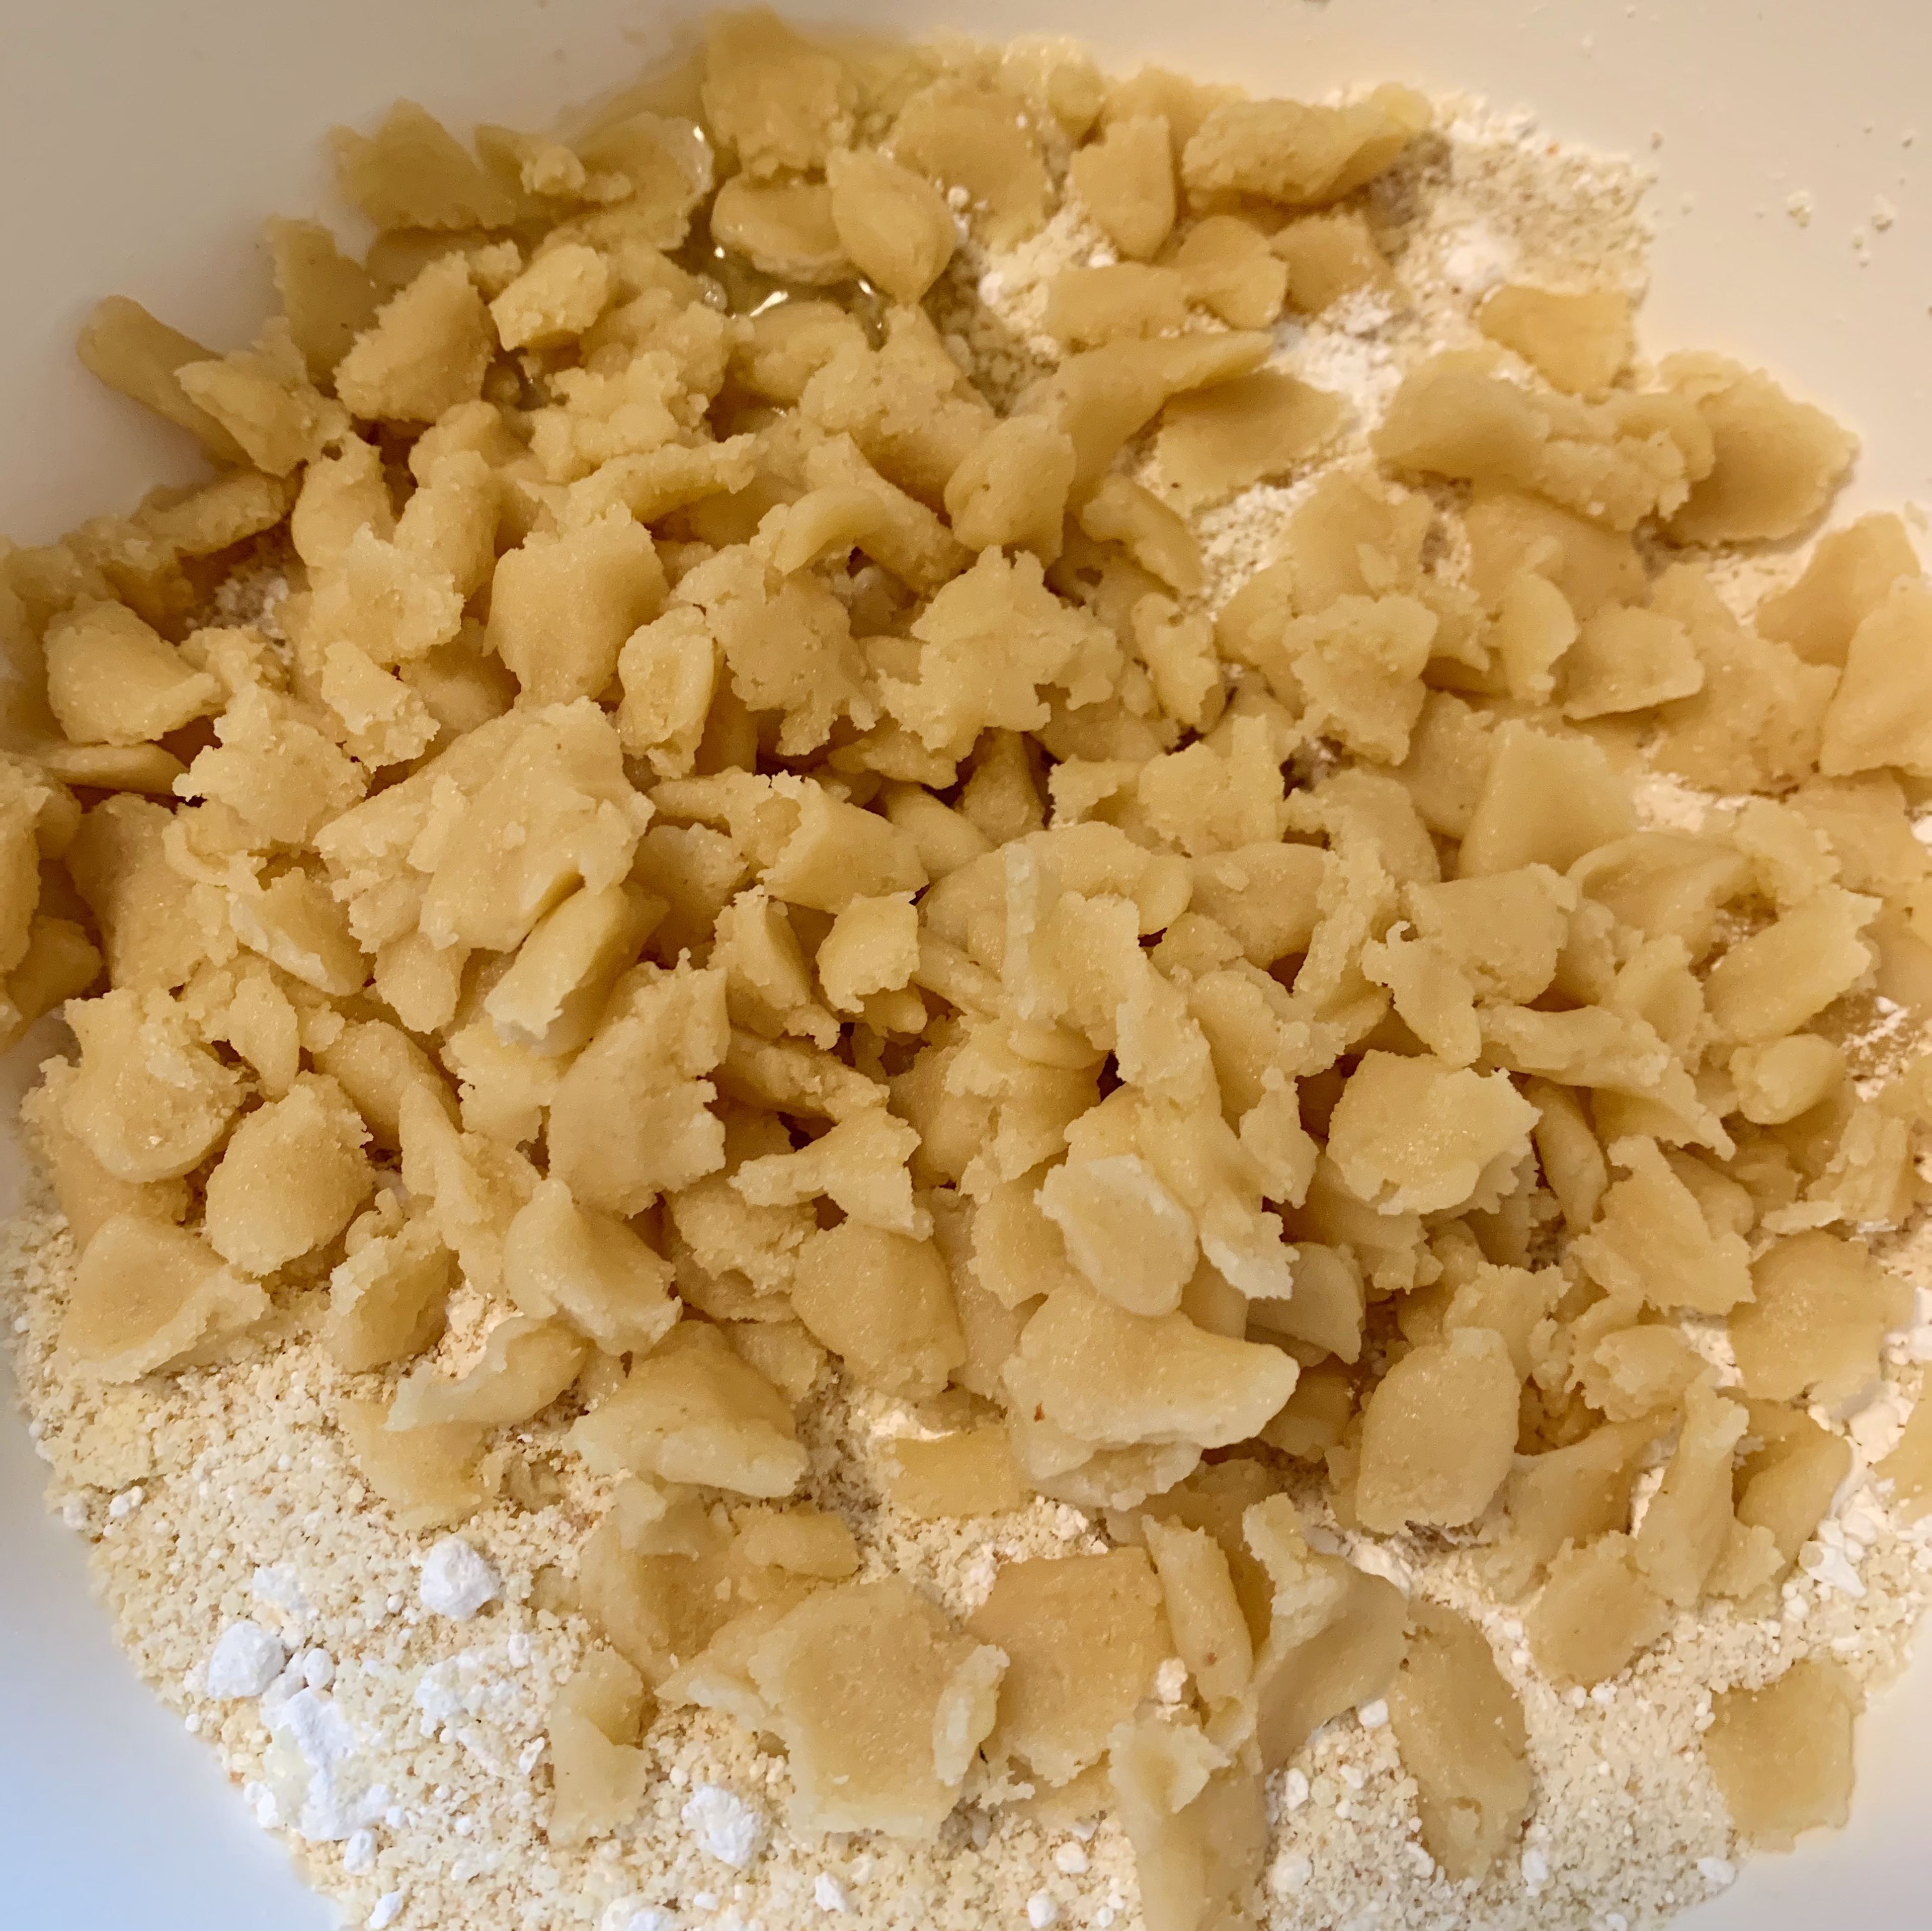 Eiweiß, Amaretto und Zitronenabrieb in die Schüssel geben. Marzipan-Rohmasse in kleine Stücke zupfen und ebenfalls zu den trockenen Zutaten geben. Alles mit den Händen zu einem glatten Teig verarbeiten.